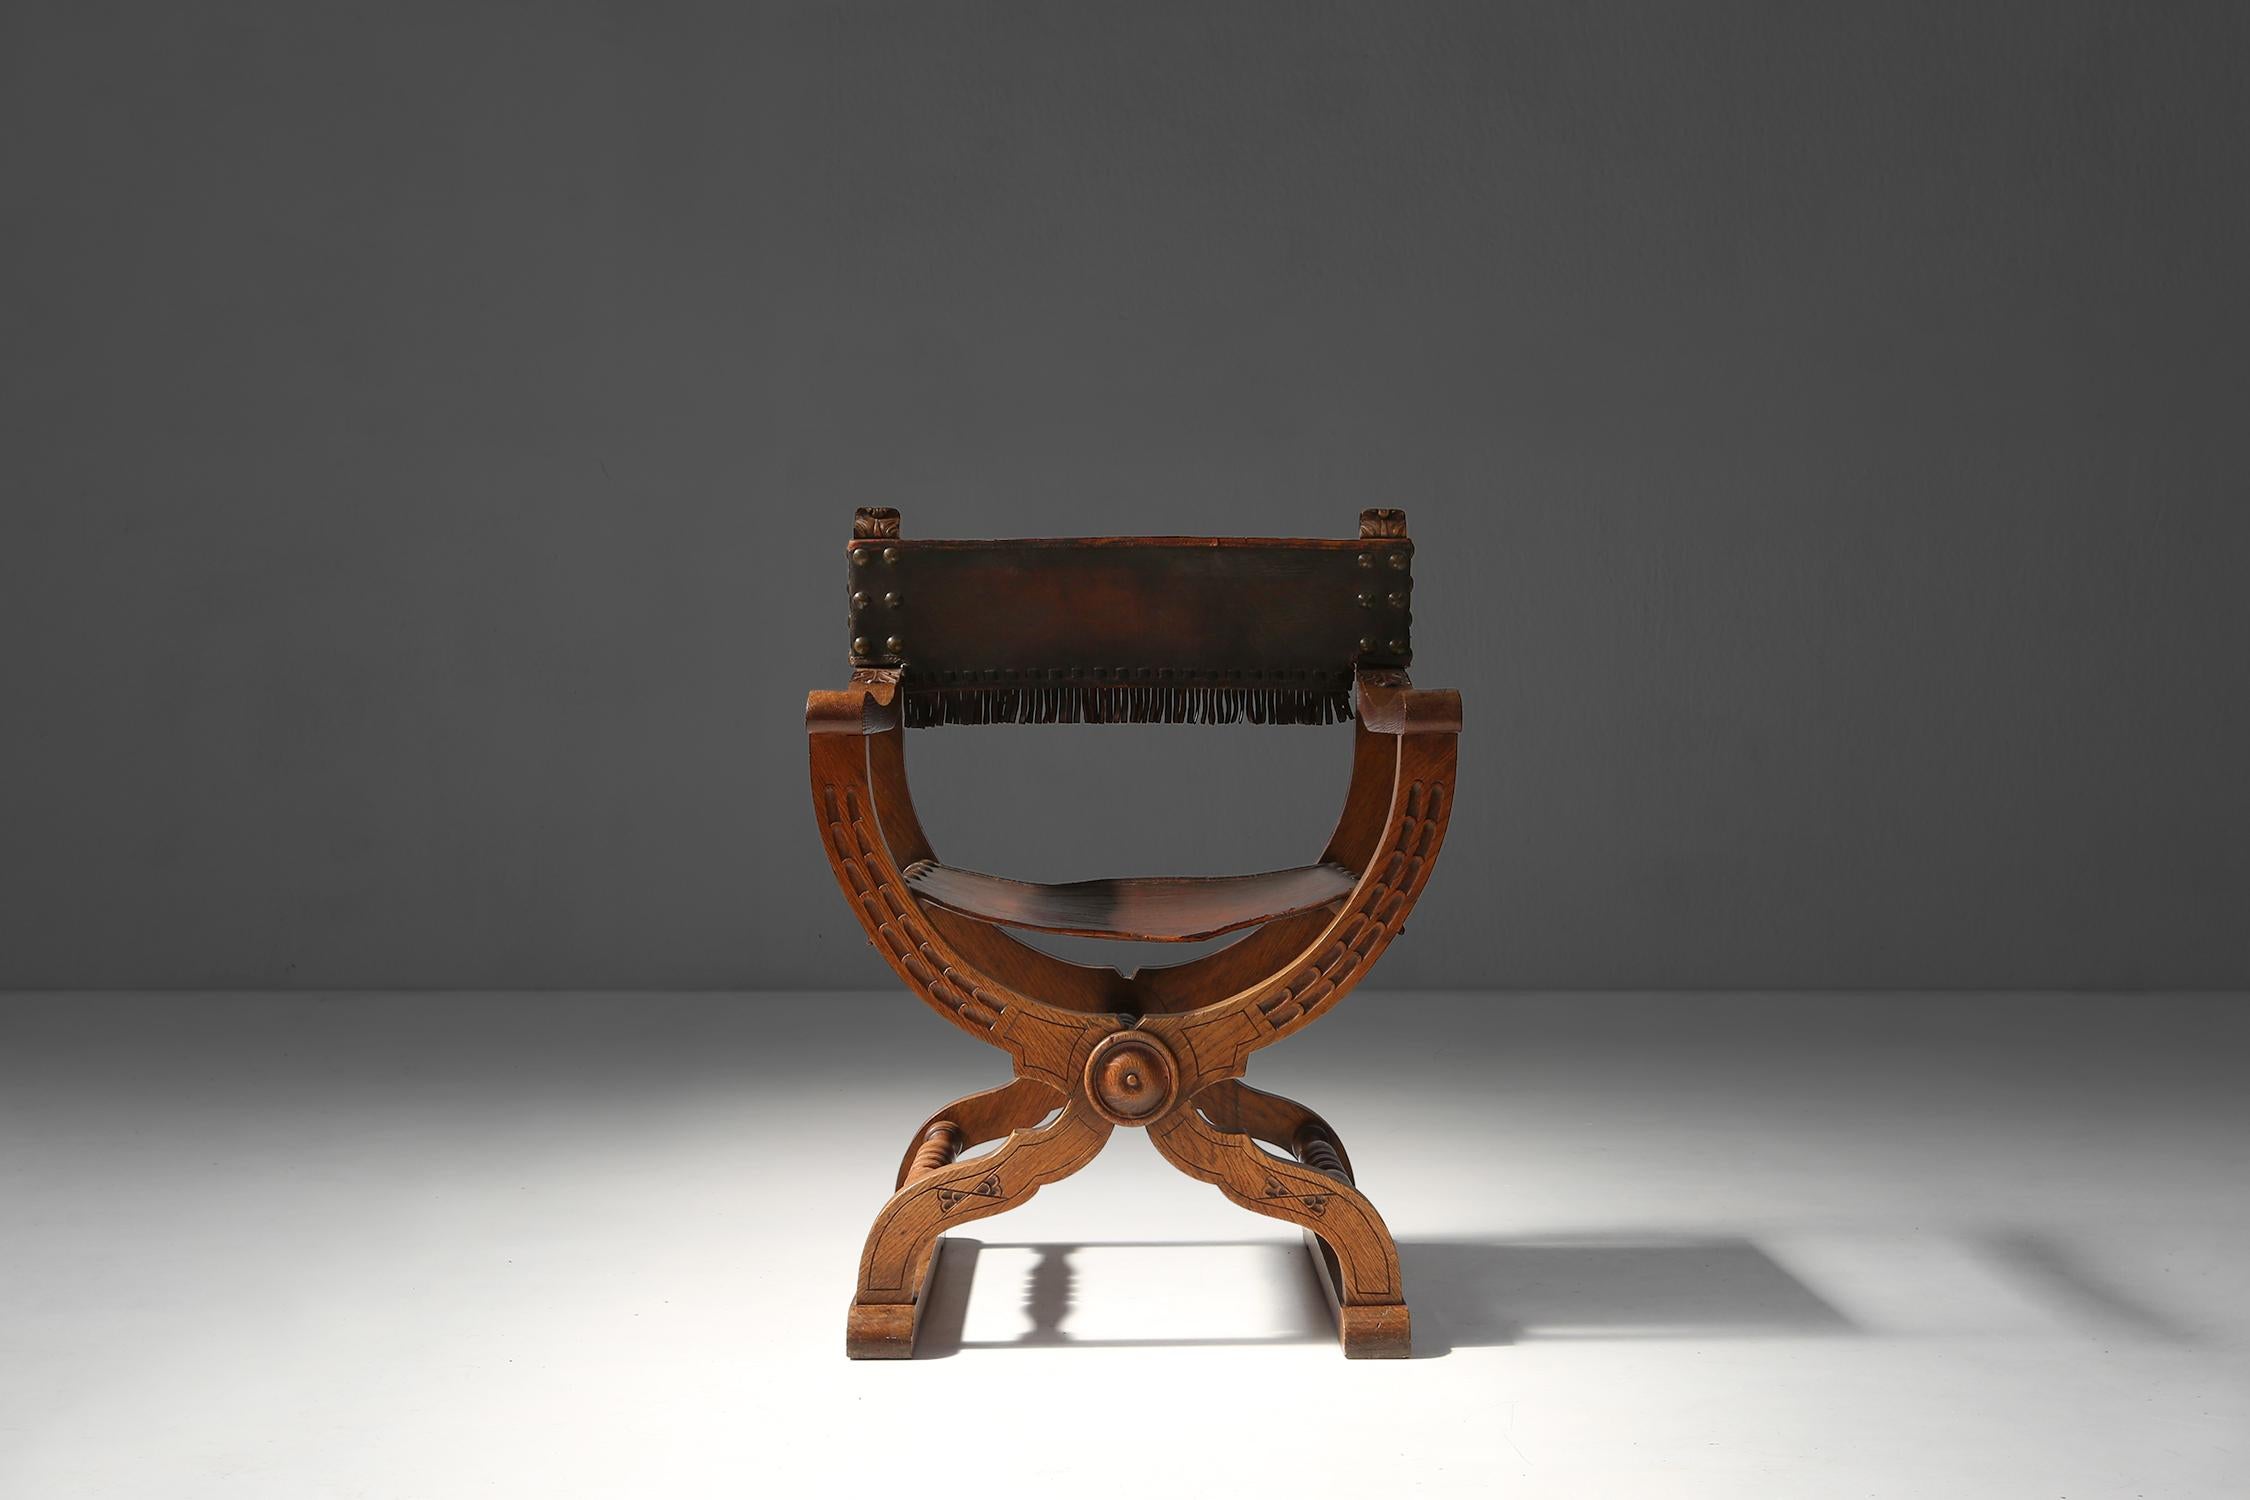 Ce fauteuil trône Néo renaissance est un meuble unique et élégant qui peut décorer n'importe quelle pièce. Cette chaise a été fabriquée vers 1890, à l'époque du style néo-renaissance, qui se caractérise par l'utilisation d'éléments et d'ornements